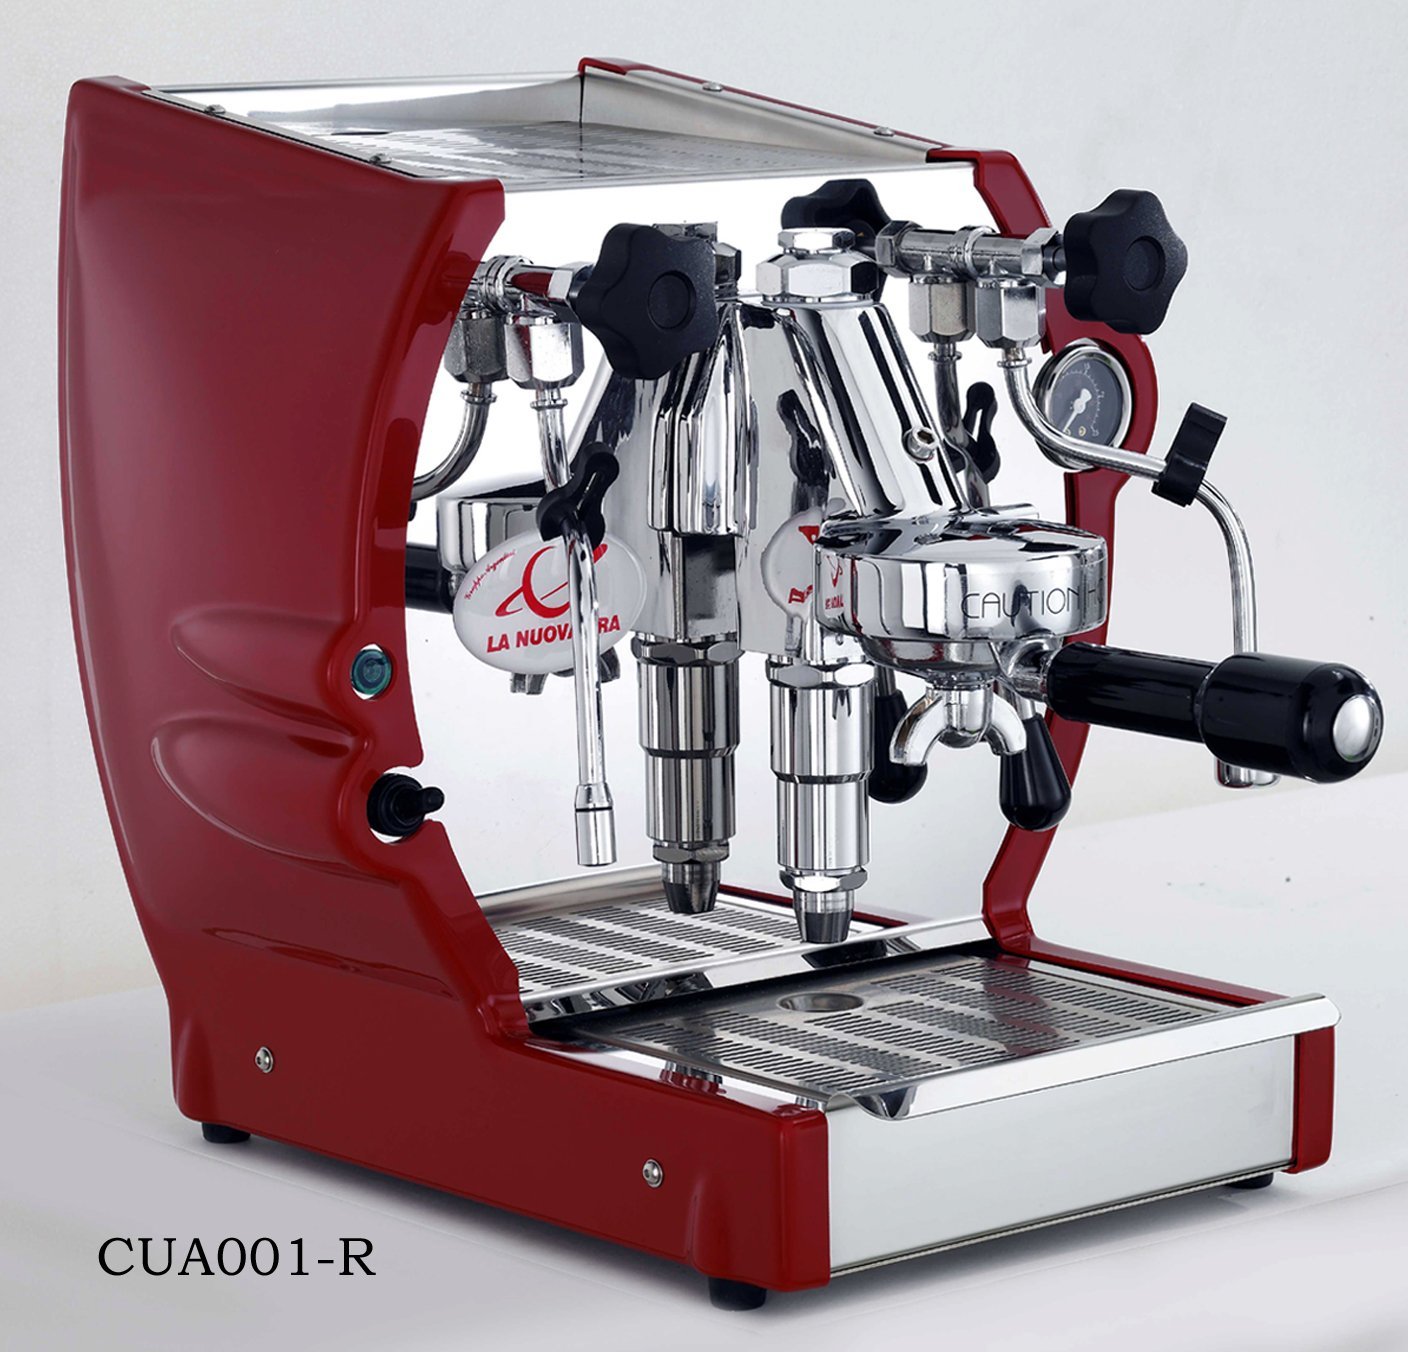 10 Best Semi Automatic Espresso Machine Reviews